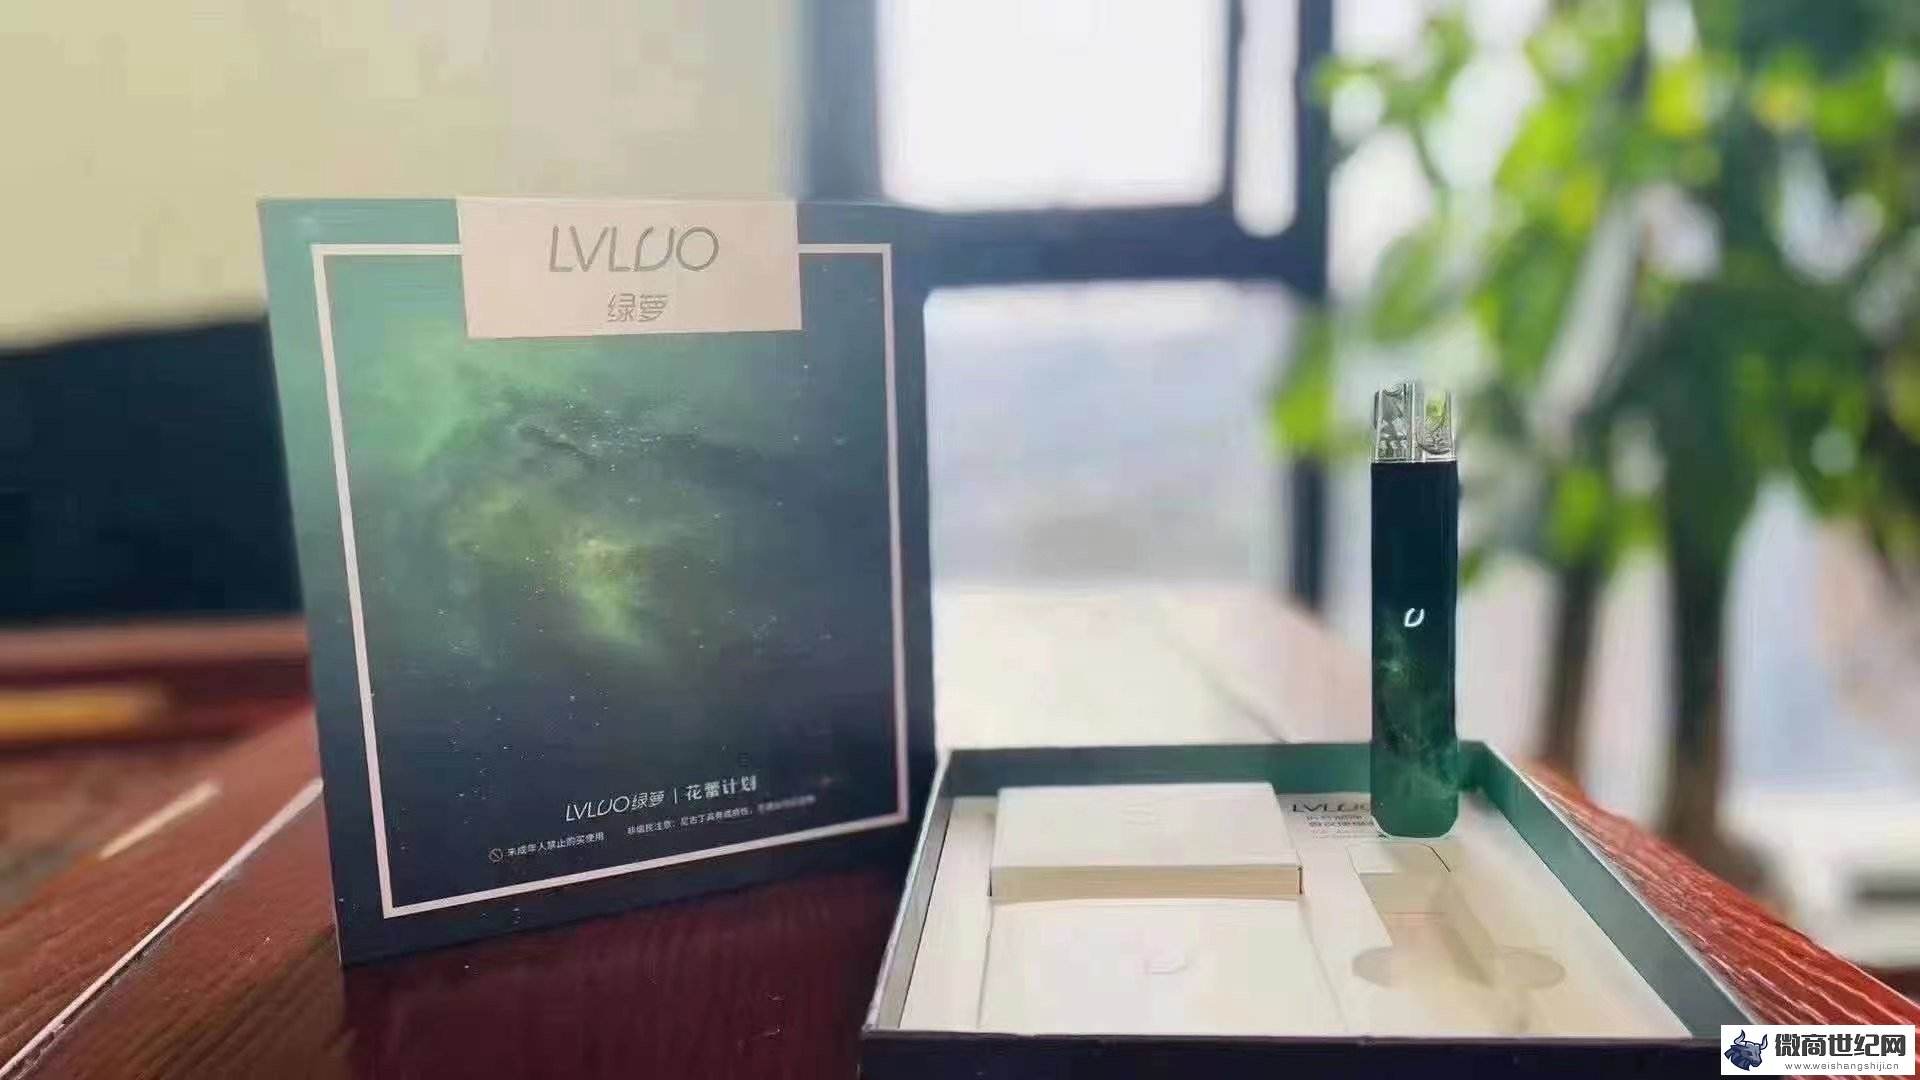 LVLUO绿萝电子烟烟弹图片及价格的简单介绍